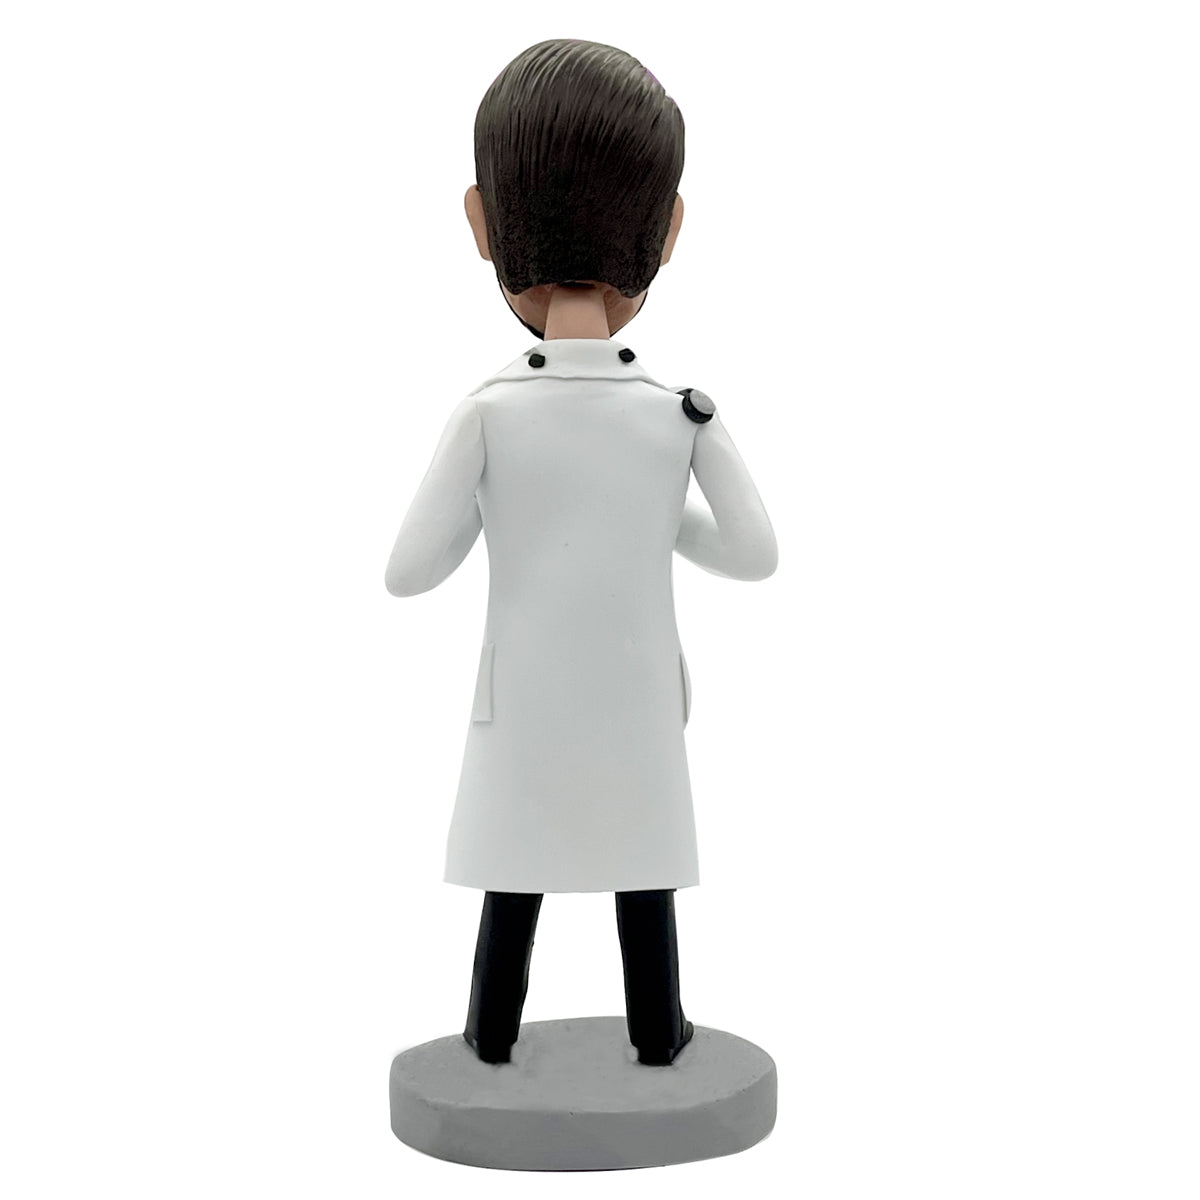 Custom Doctor Bobblehead Doll for Man